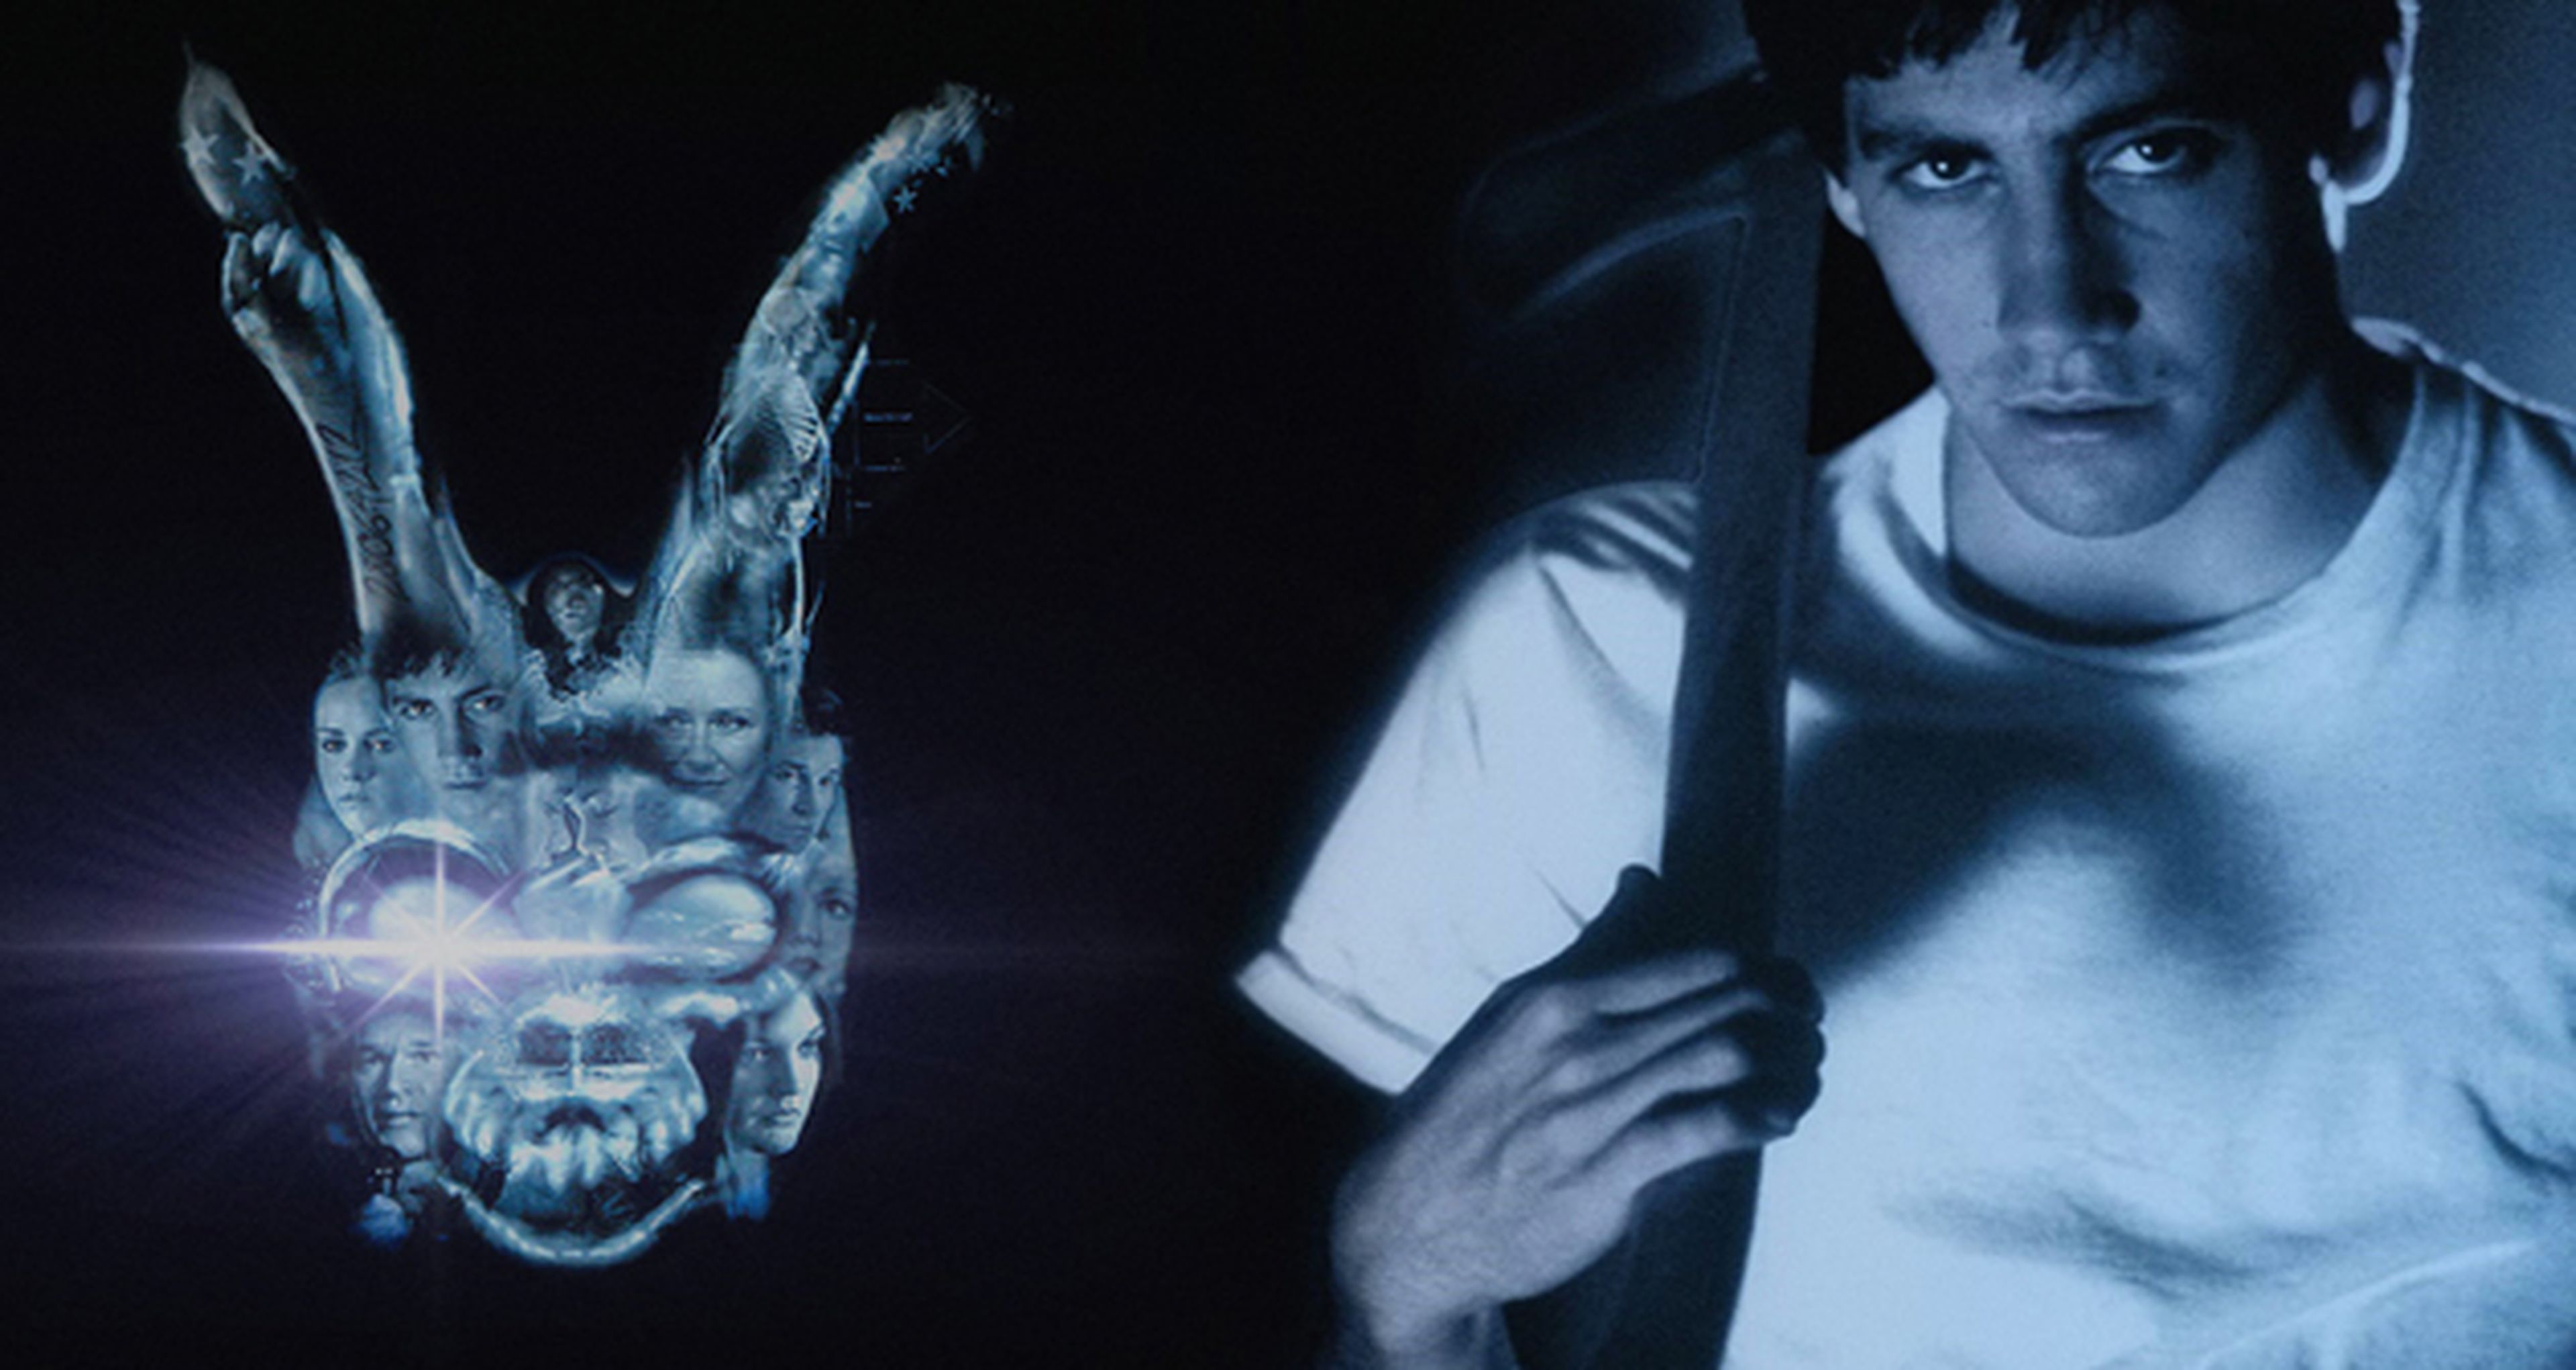 Cine de ciencia ficción: Donnie Darko